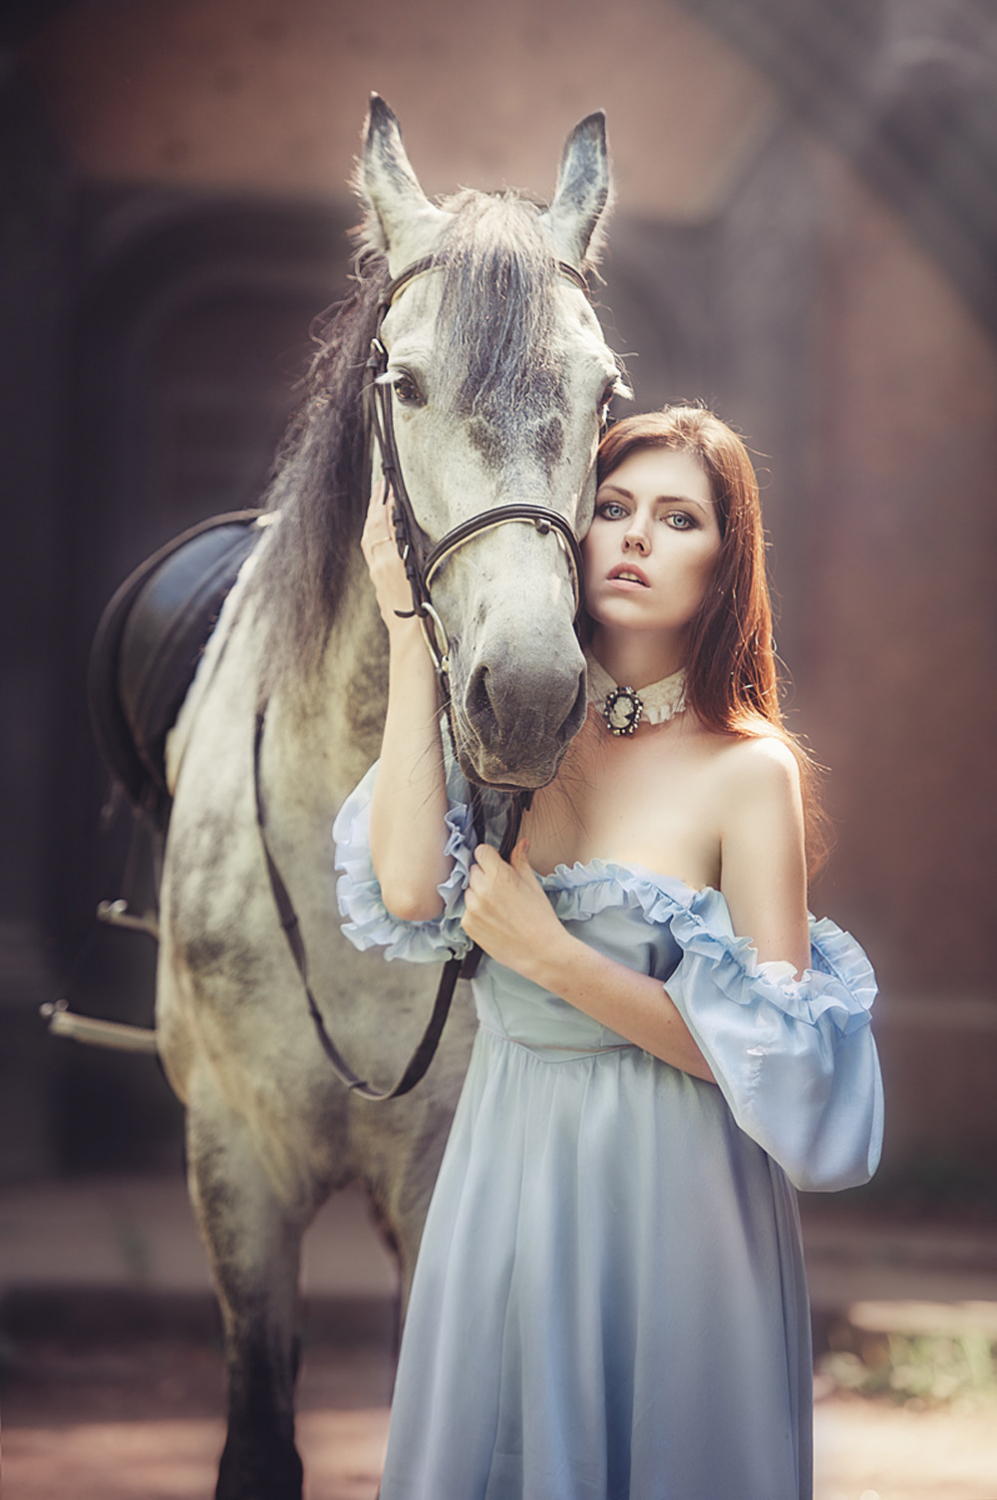 stallion, девушка рядом с лошадью, фотосессия с белой лошадью, красивые  фото девушек с лошадьми, женщина и лошадь картинки, фото девушек с лошадьми  на аву, Свадебный фотограф Москва